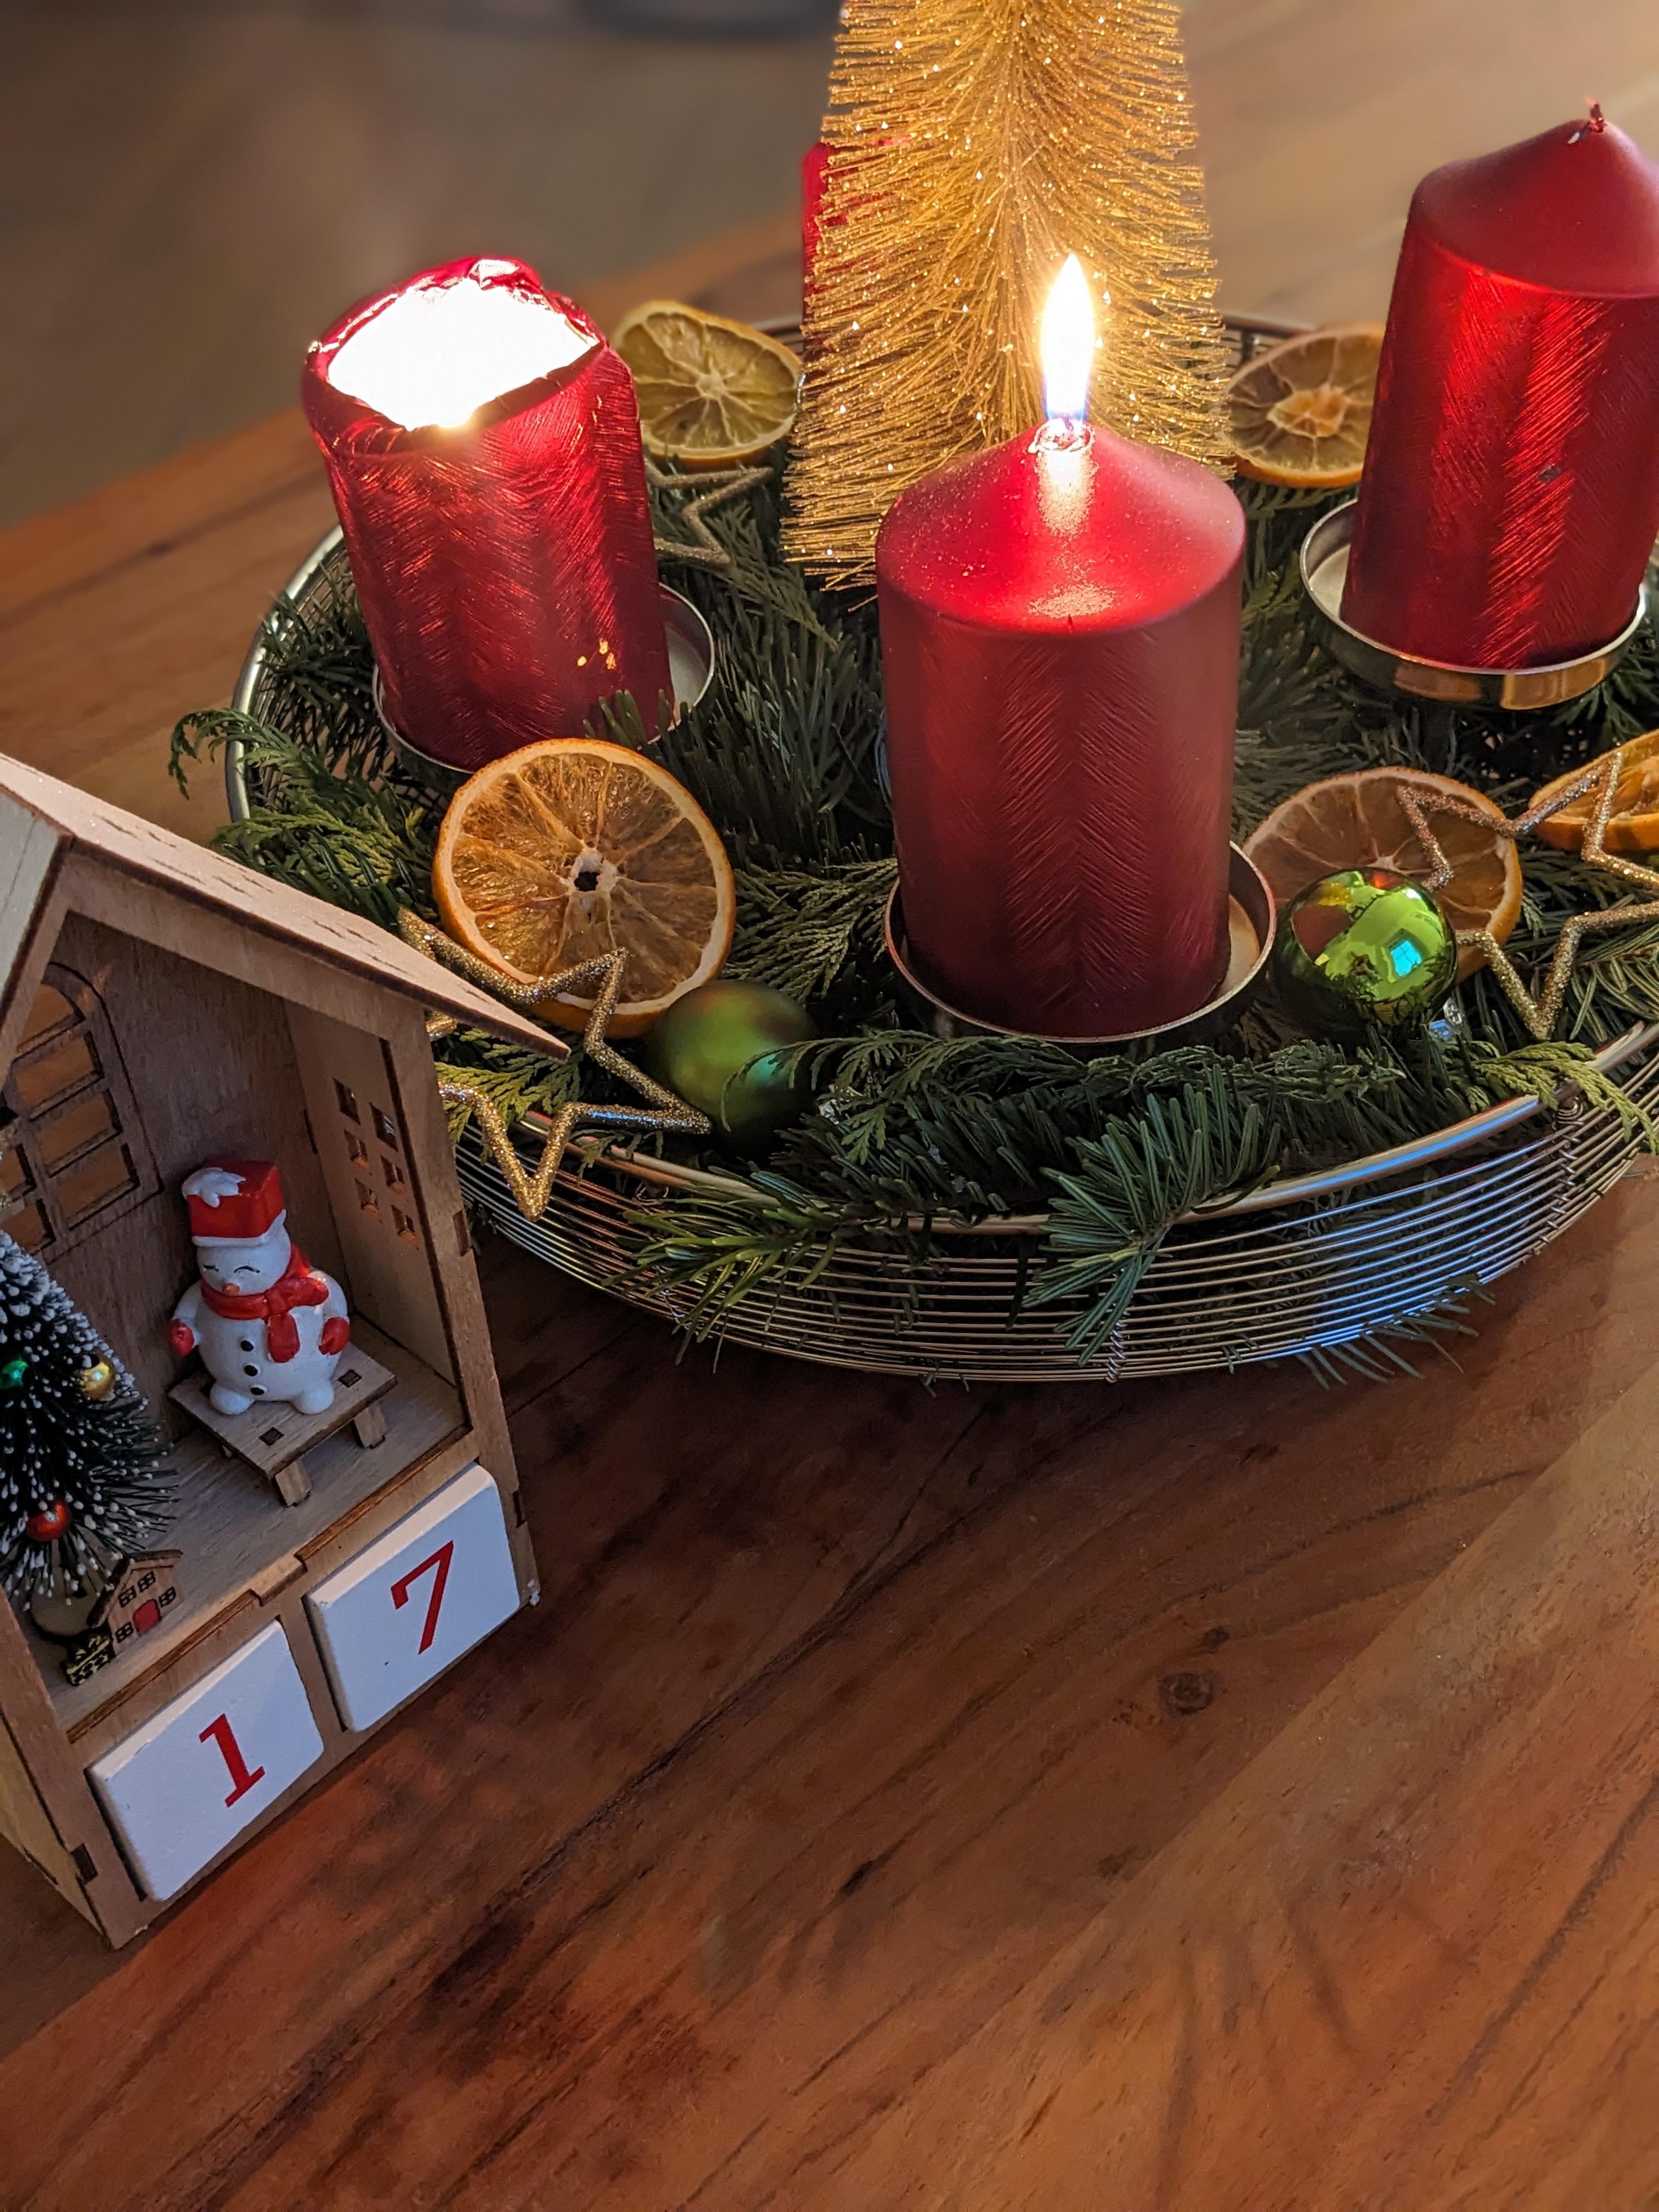 🕯️Advent, Advent das dritte Lichtlein brennt.🕯️

Einen schönen 3 Advent!
#kranz #adventskranz #christmas #dekoration